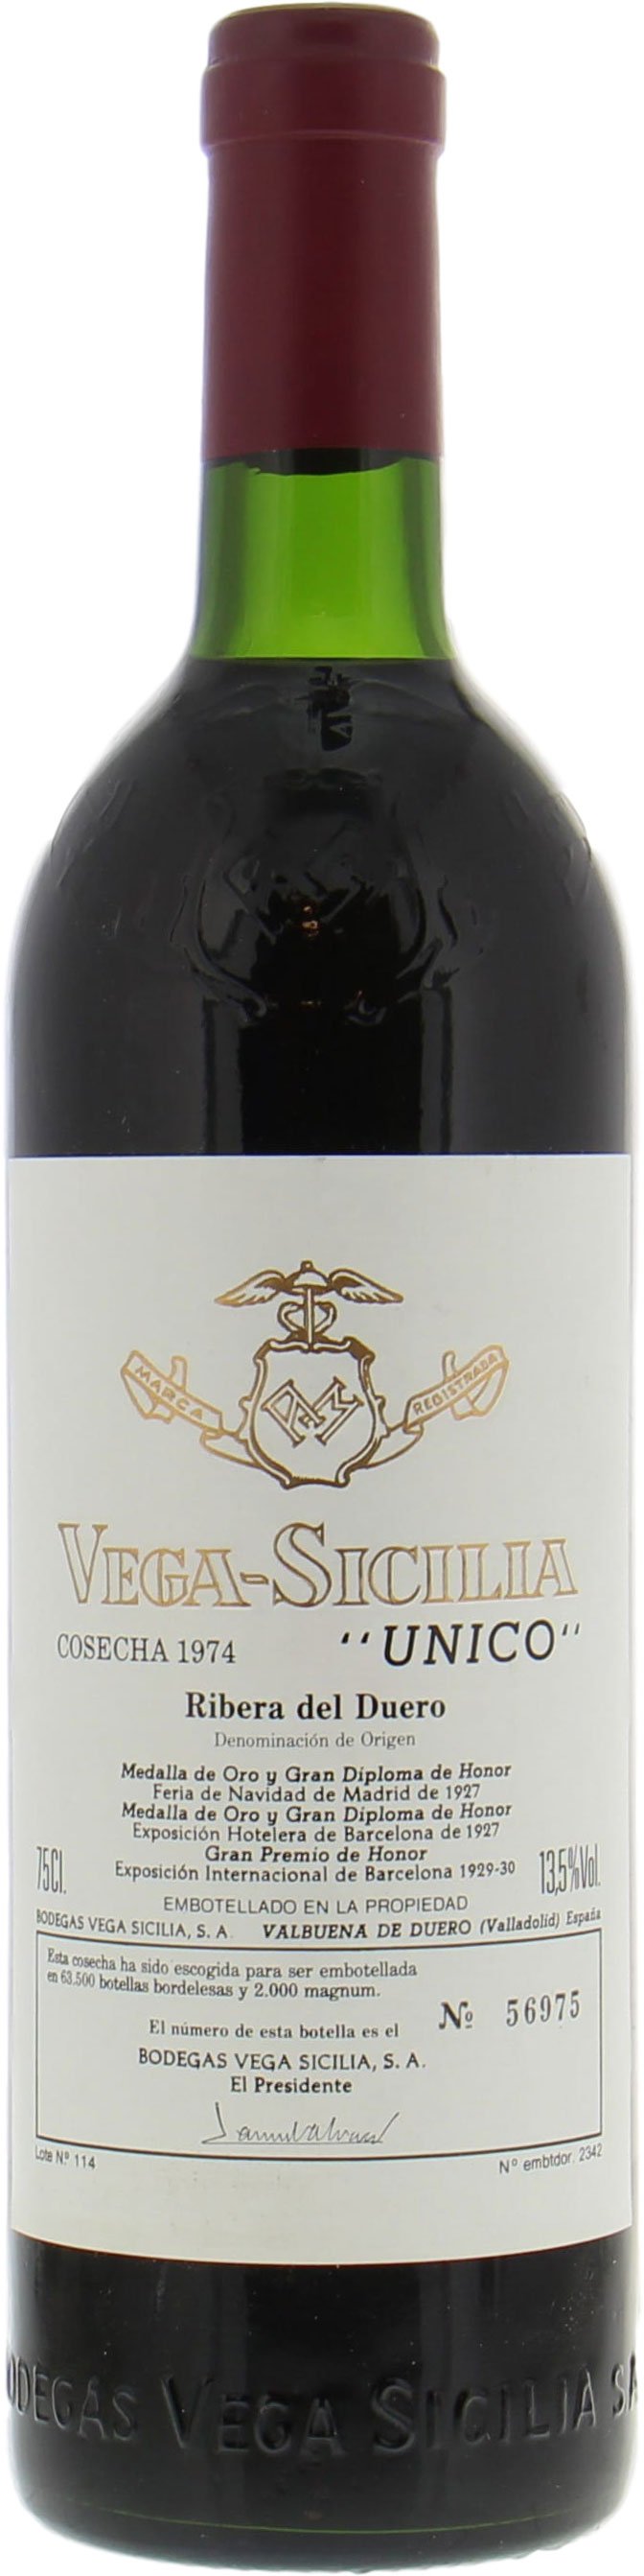 Vega Sicilia - Unico 1974